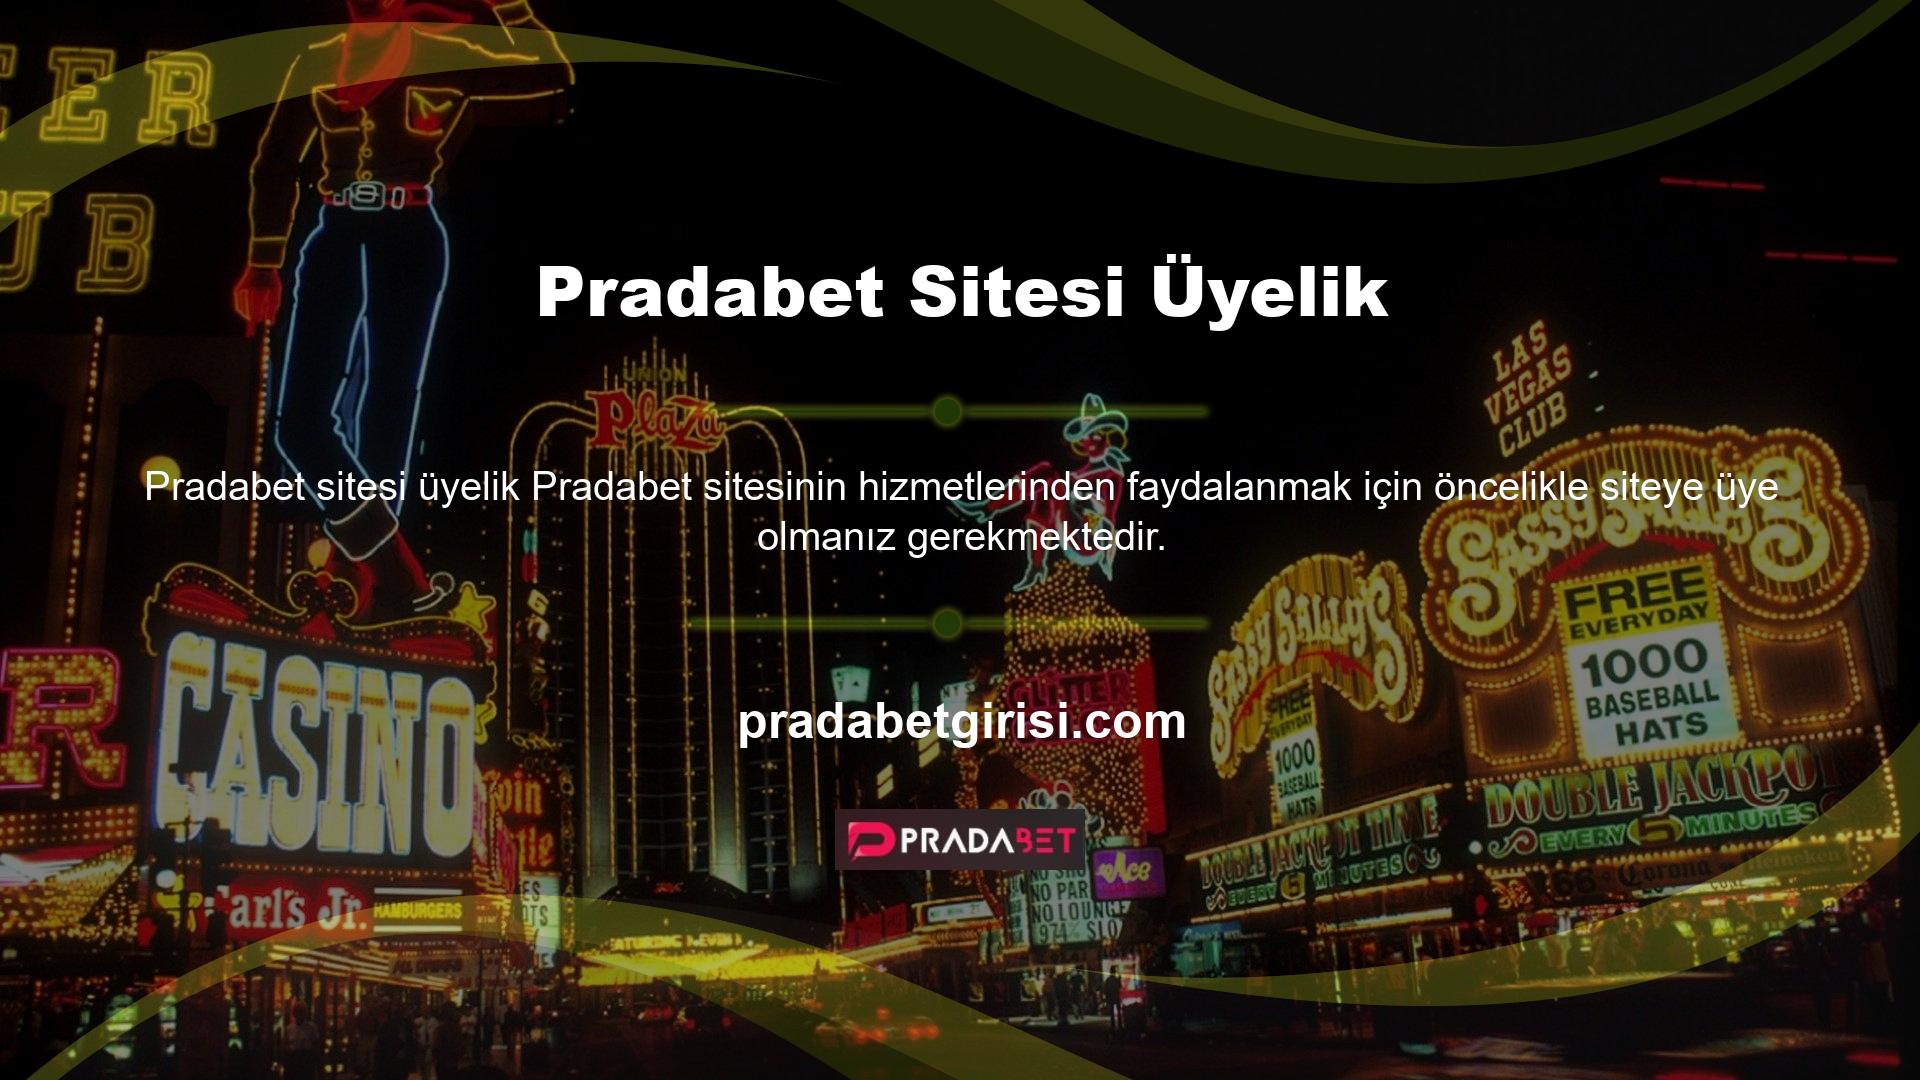 Pradabet internet sitesine üye olmak için Pradabet kayıt işlemini tamamlamalı ve burada bulunan kayıt alanına gerekli bilgileri girmelisiniz